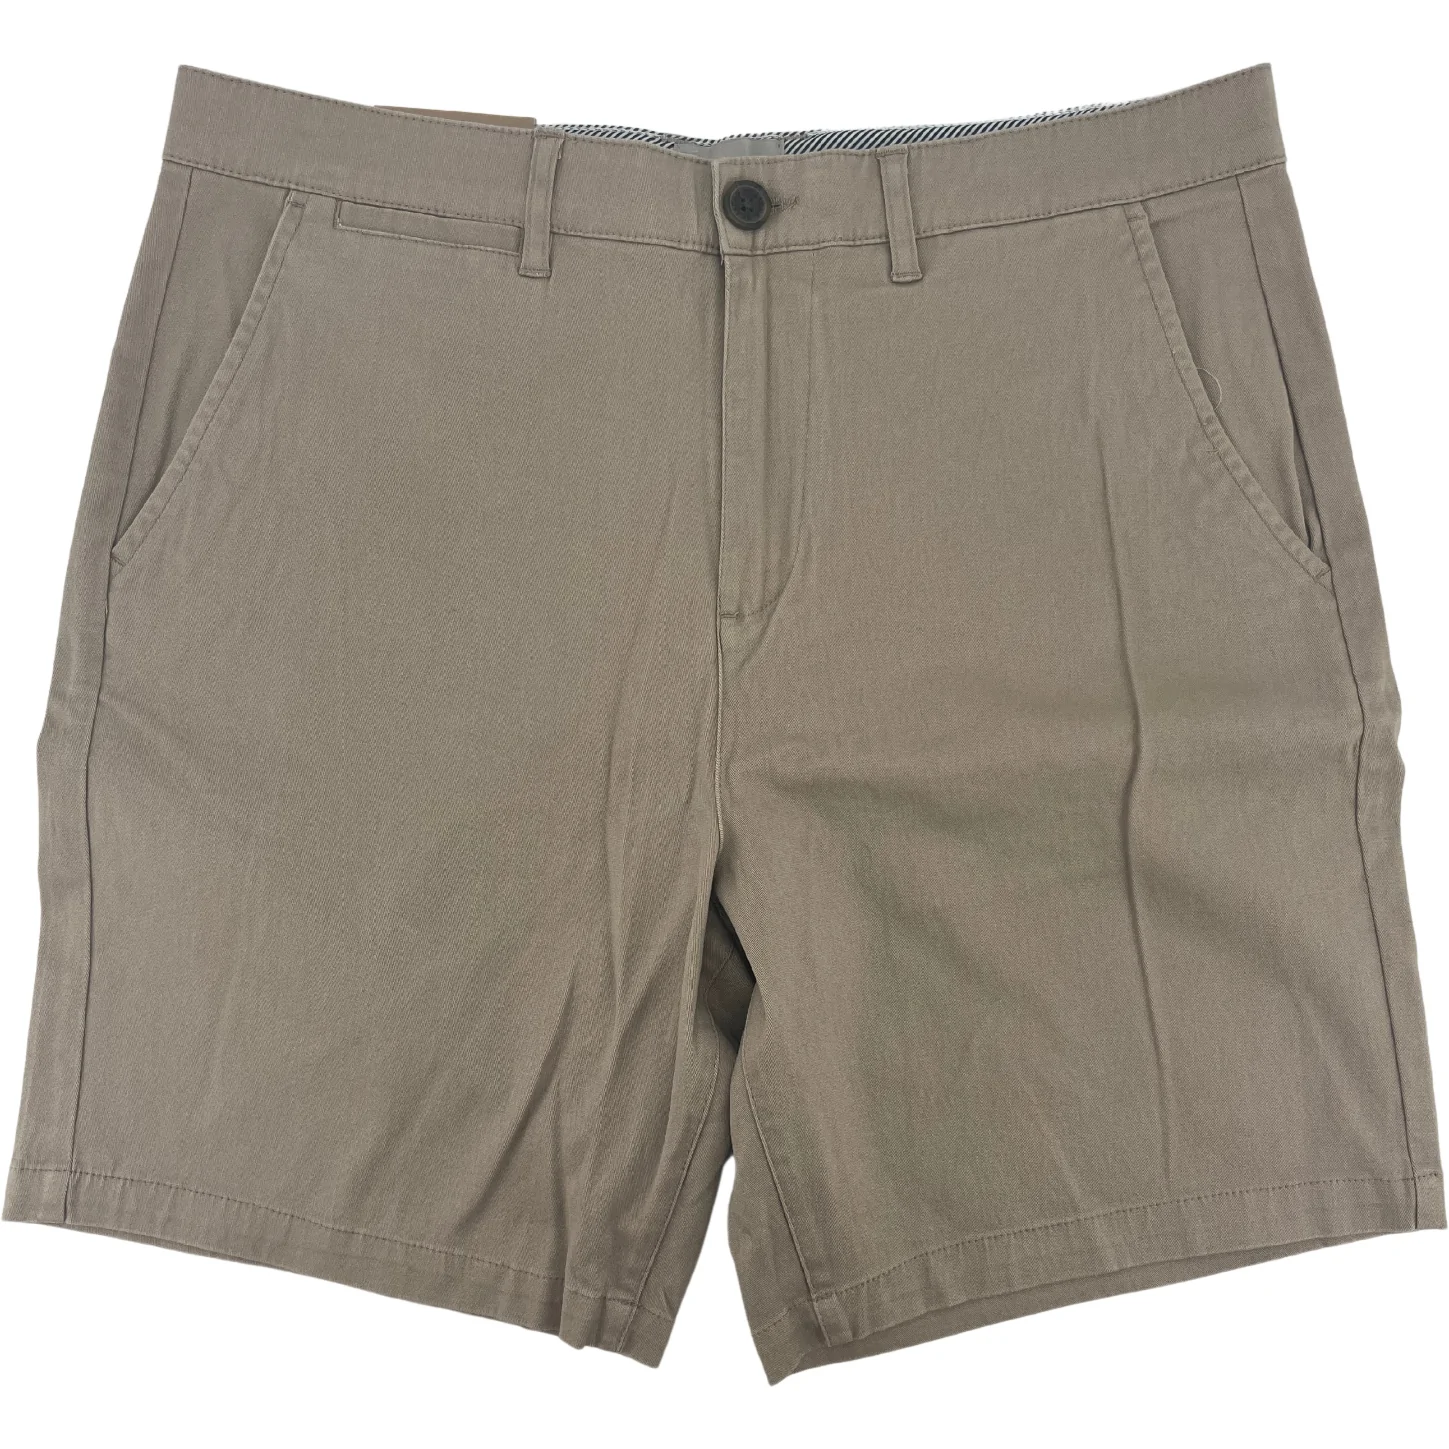 Jachs Men's Shorts / Men's Summer Shorts / Beige / Size 32